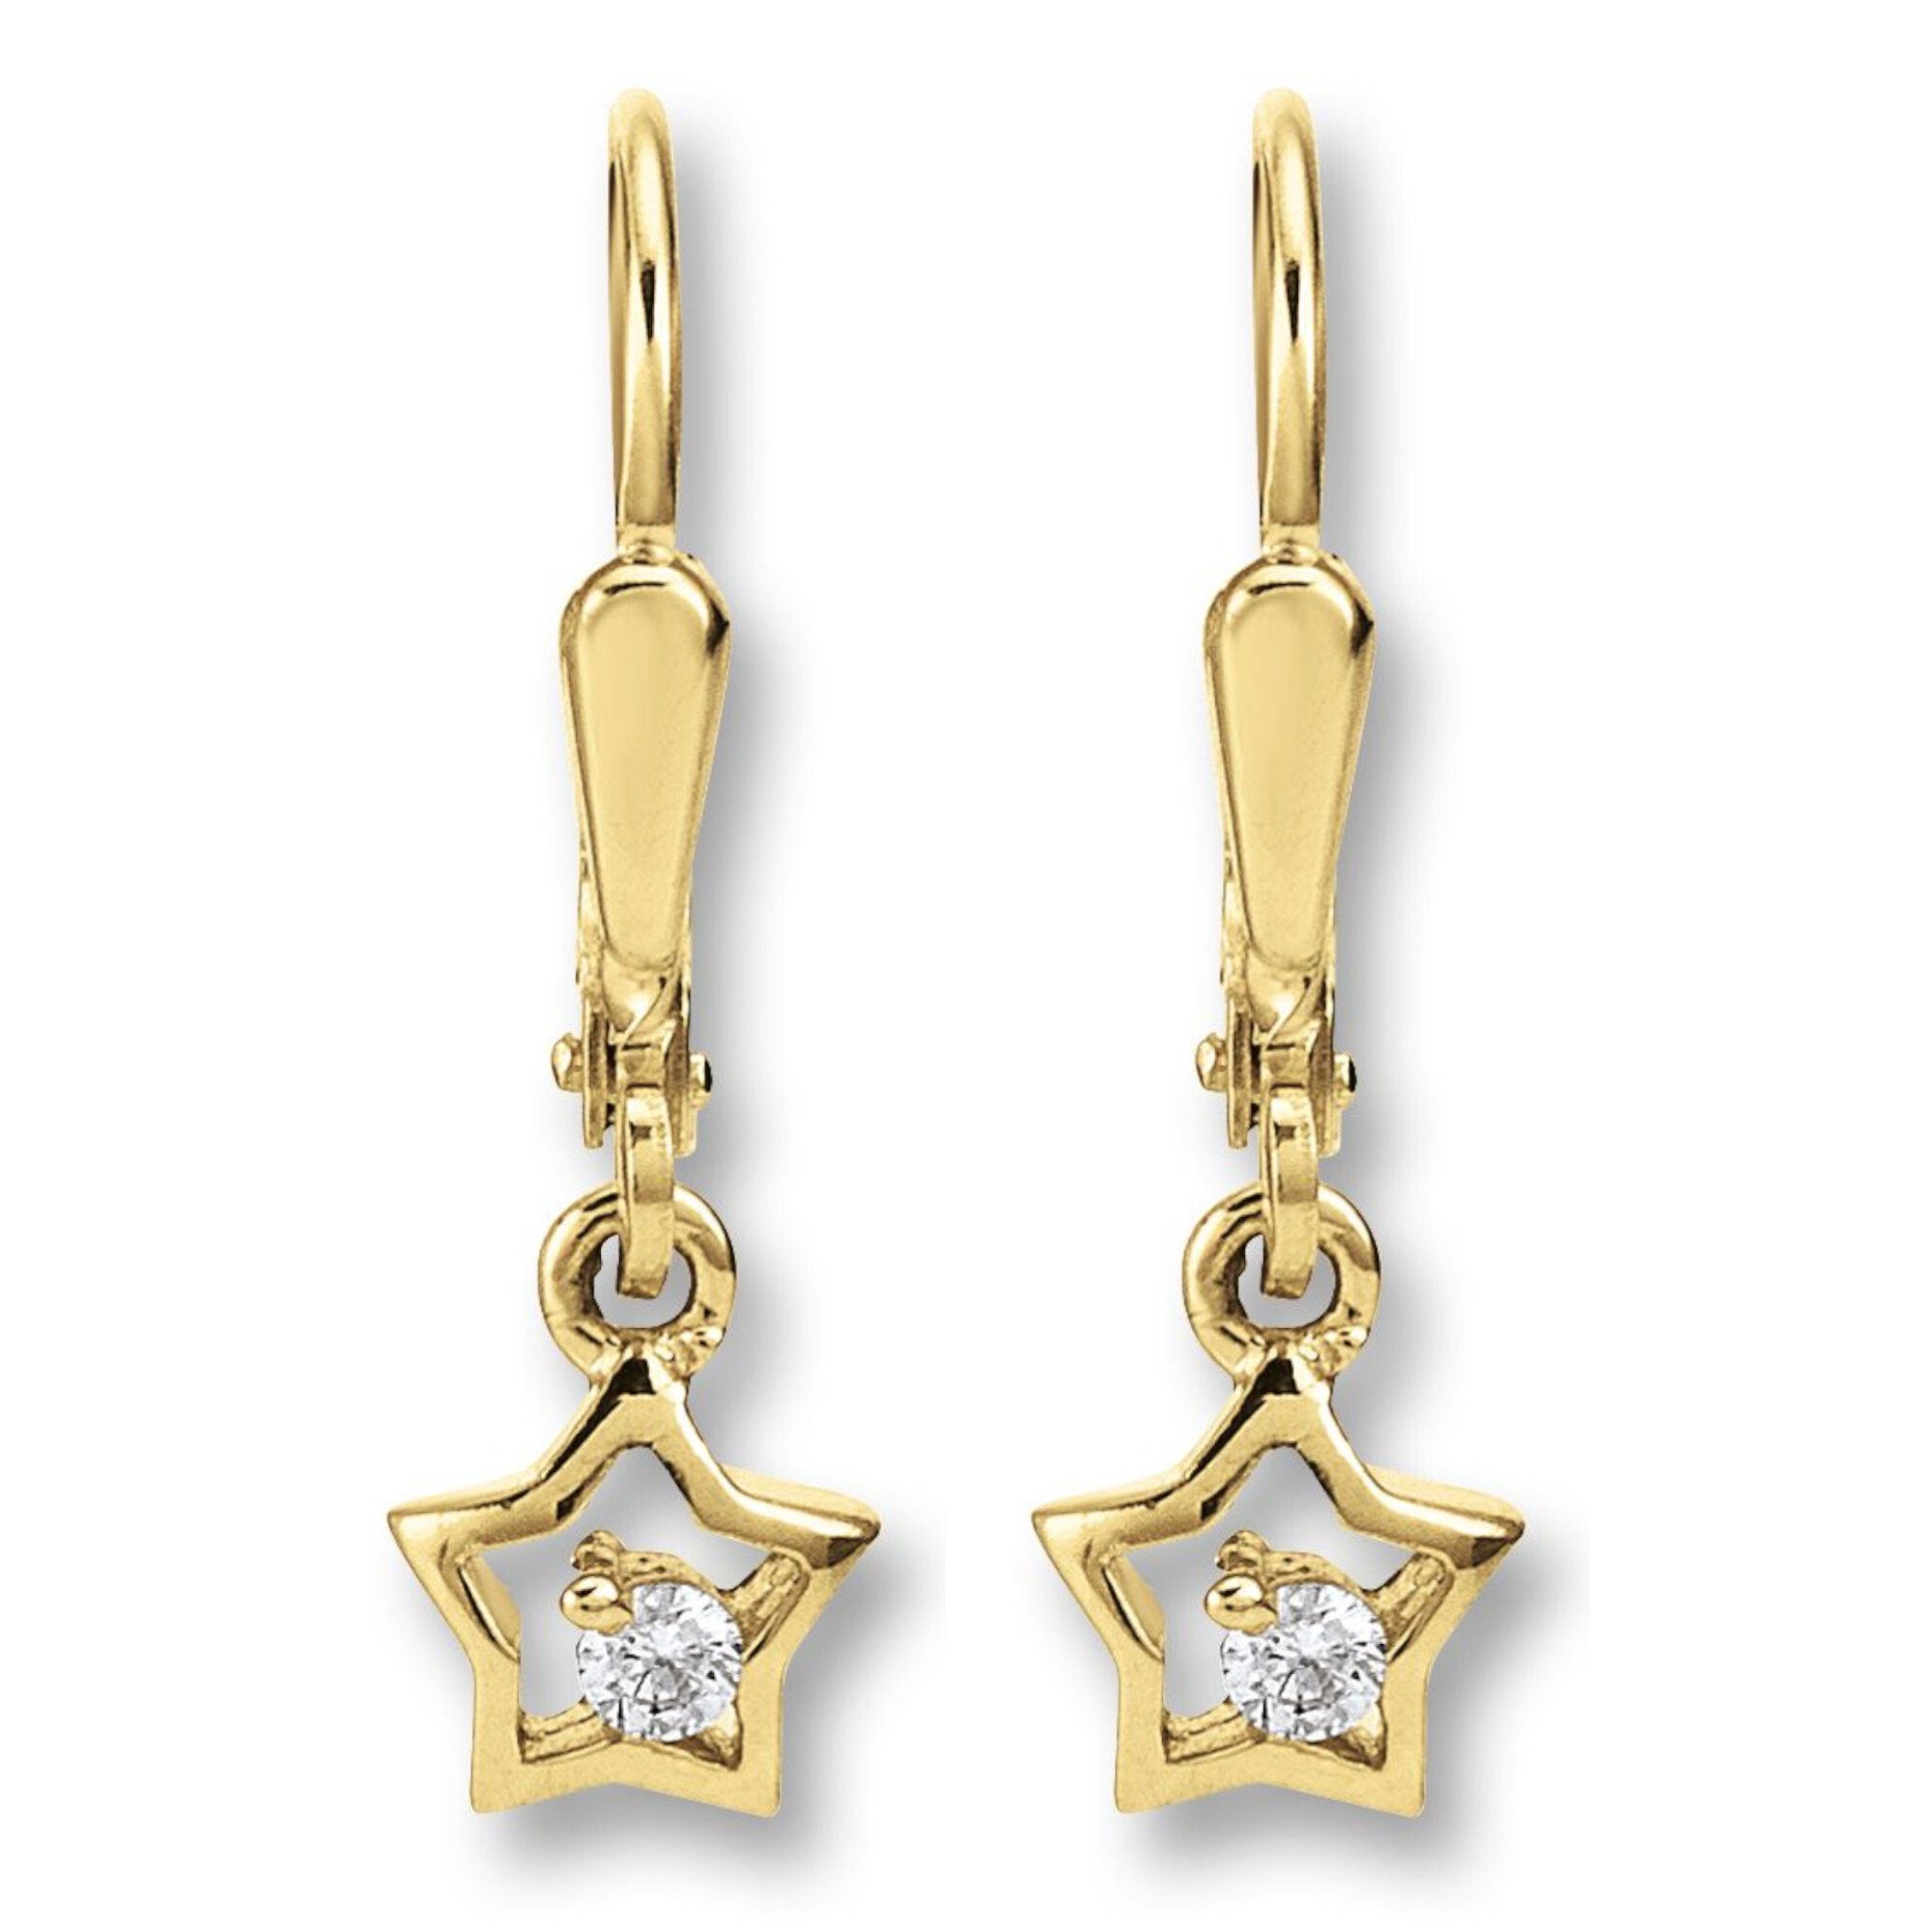 Stern Ohrhänger Paar Zirkonia Ohrringe Gelbgold, 333 aus ONE Ohrhänger Schmuck Damen Gold Stern ELEMENT